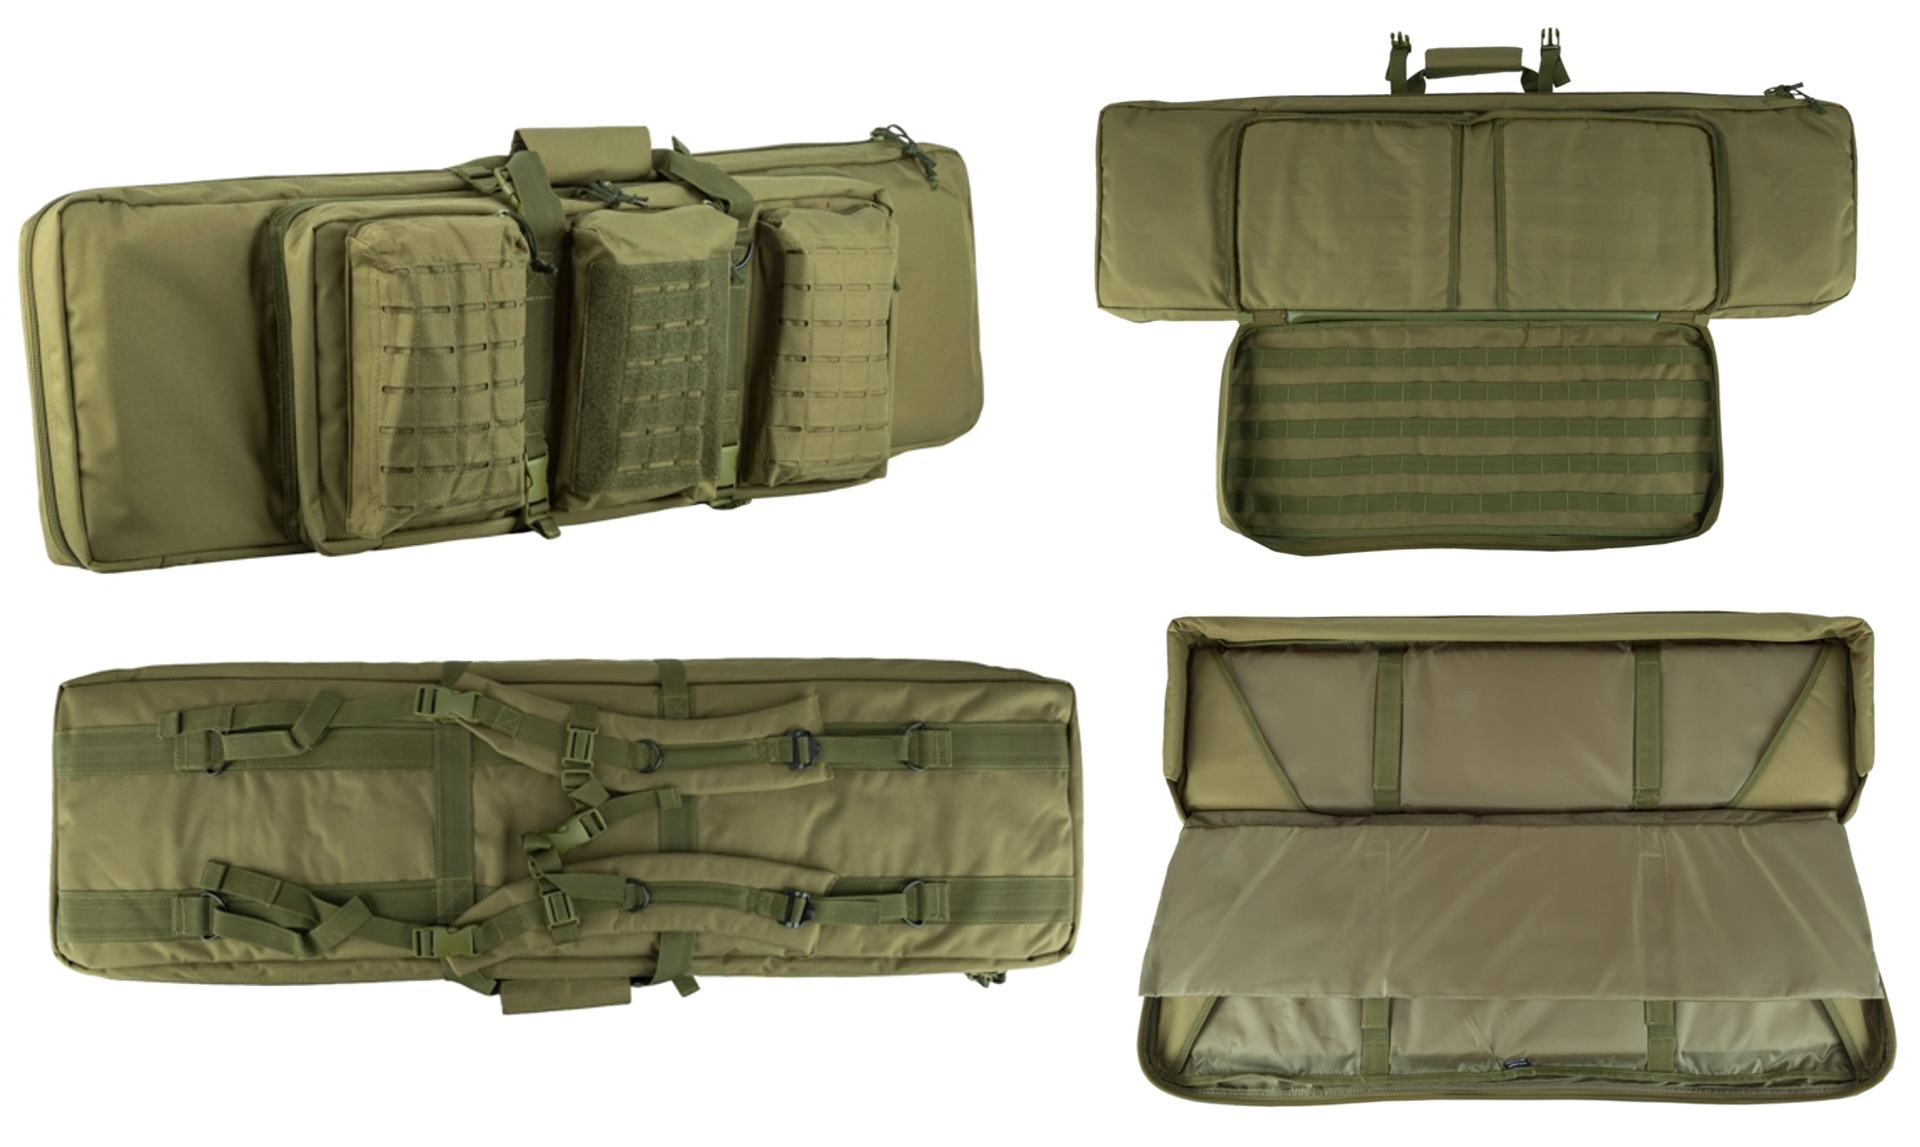 Iščete vrhunsko vojaško strelsko torbo za dve dolgocevni puški in dve pištoli? Priskrbite si najboljšo torbo za varno in udobno prenašanje vaše opreme. Idealna za vojaške navdušence, lovce in strelce.